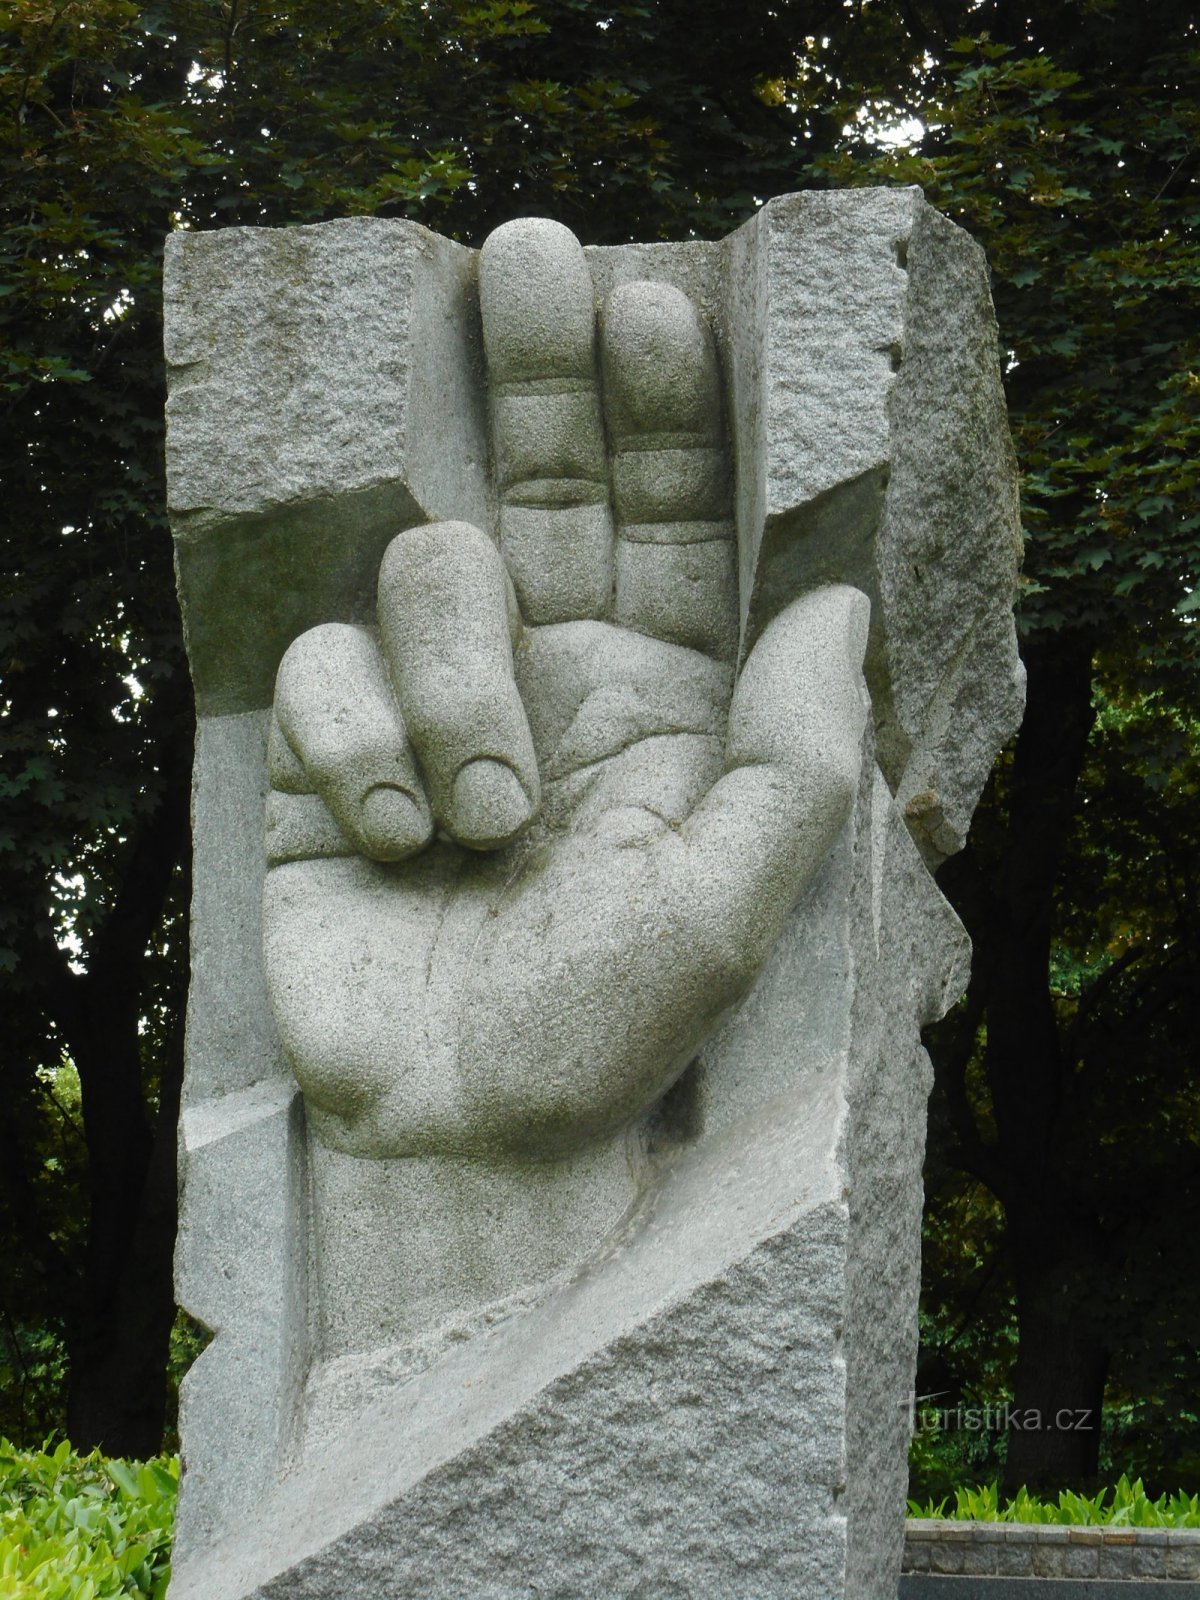 Ensimmäisen ja toisen maailmansodan uhrien muistomerkki Maailmansota Chrudimissa